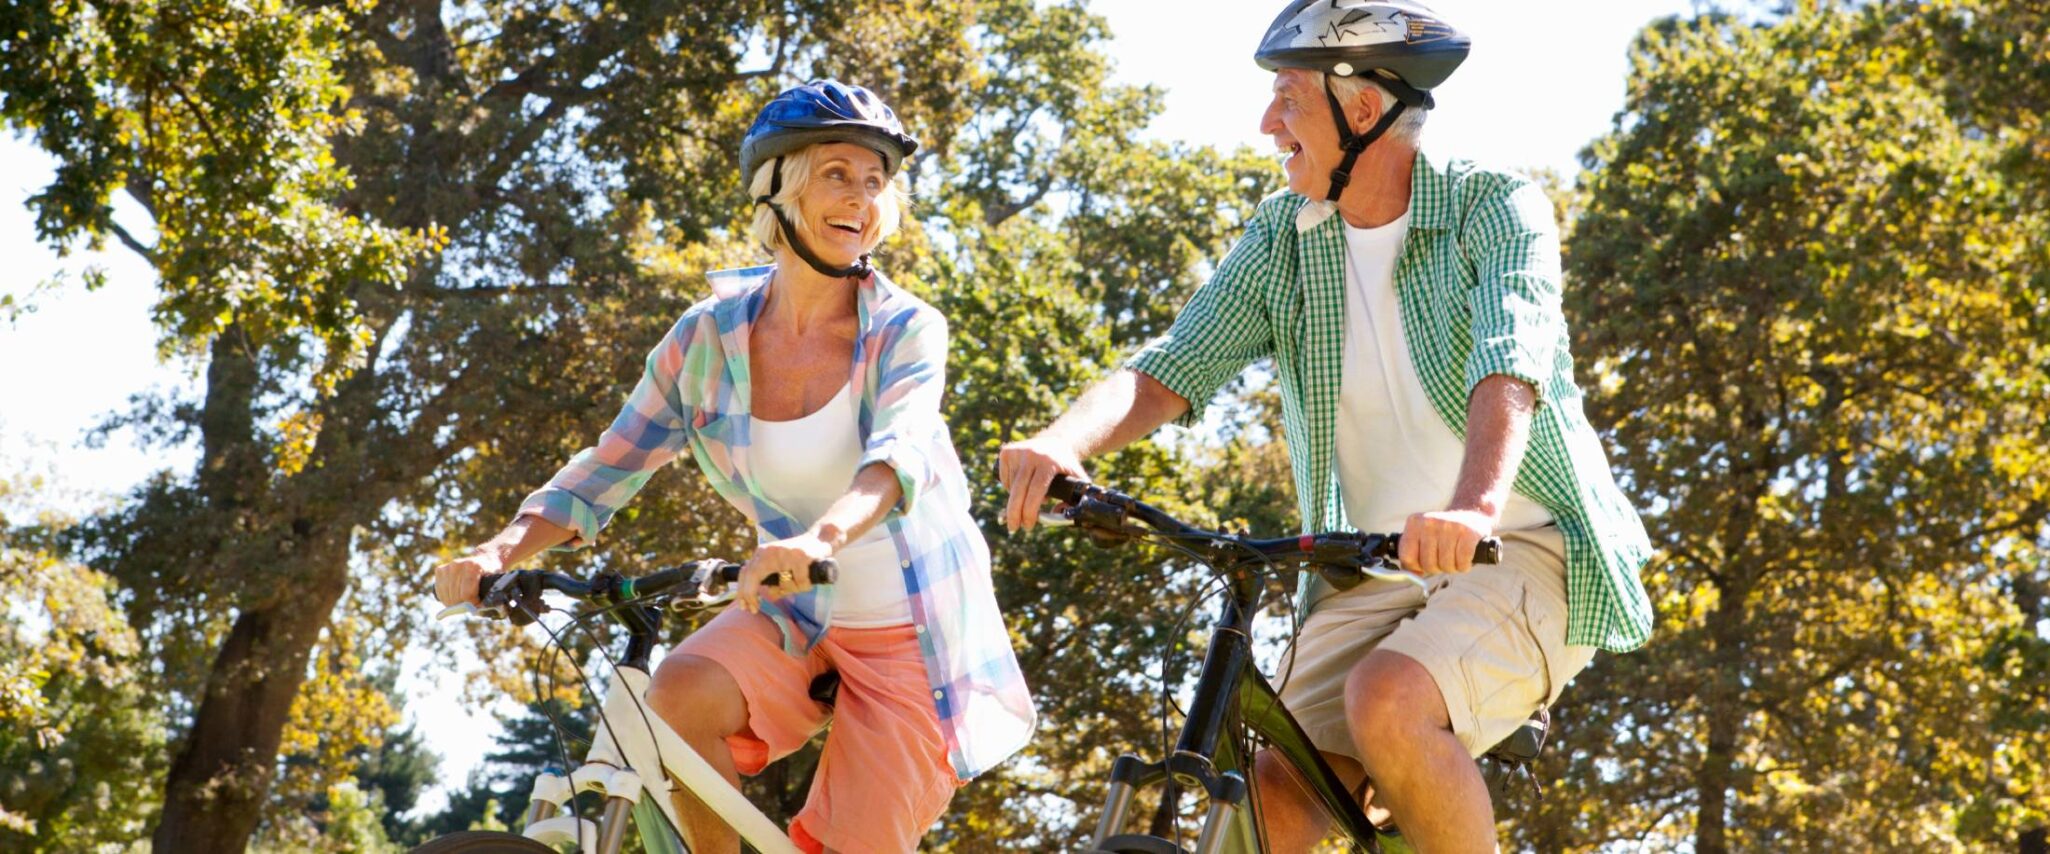 senior couple riding bikes on a trail